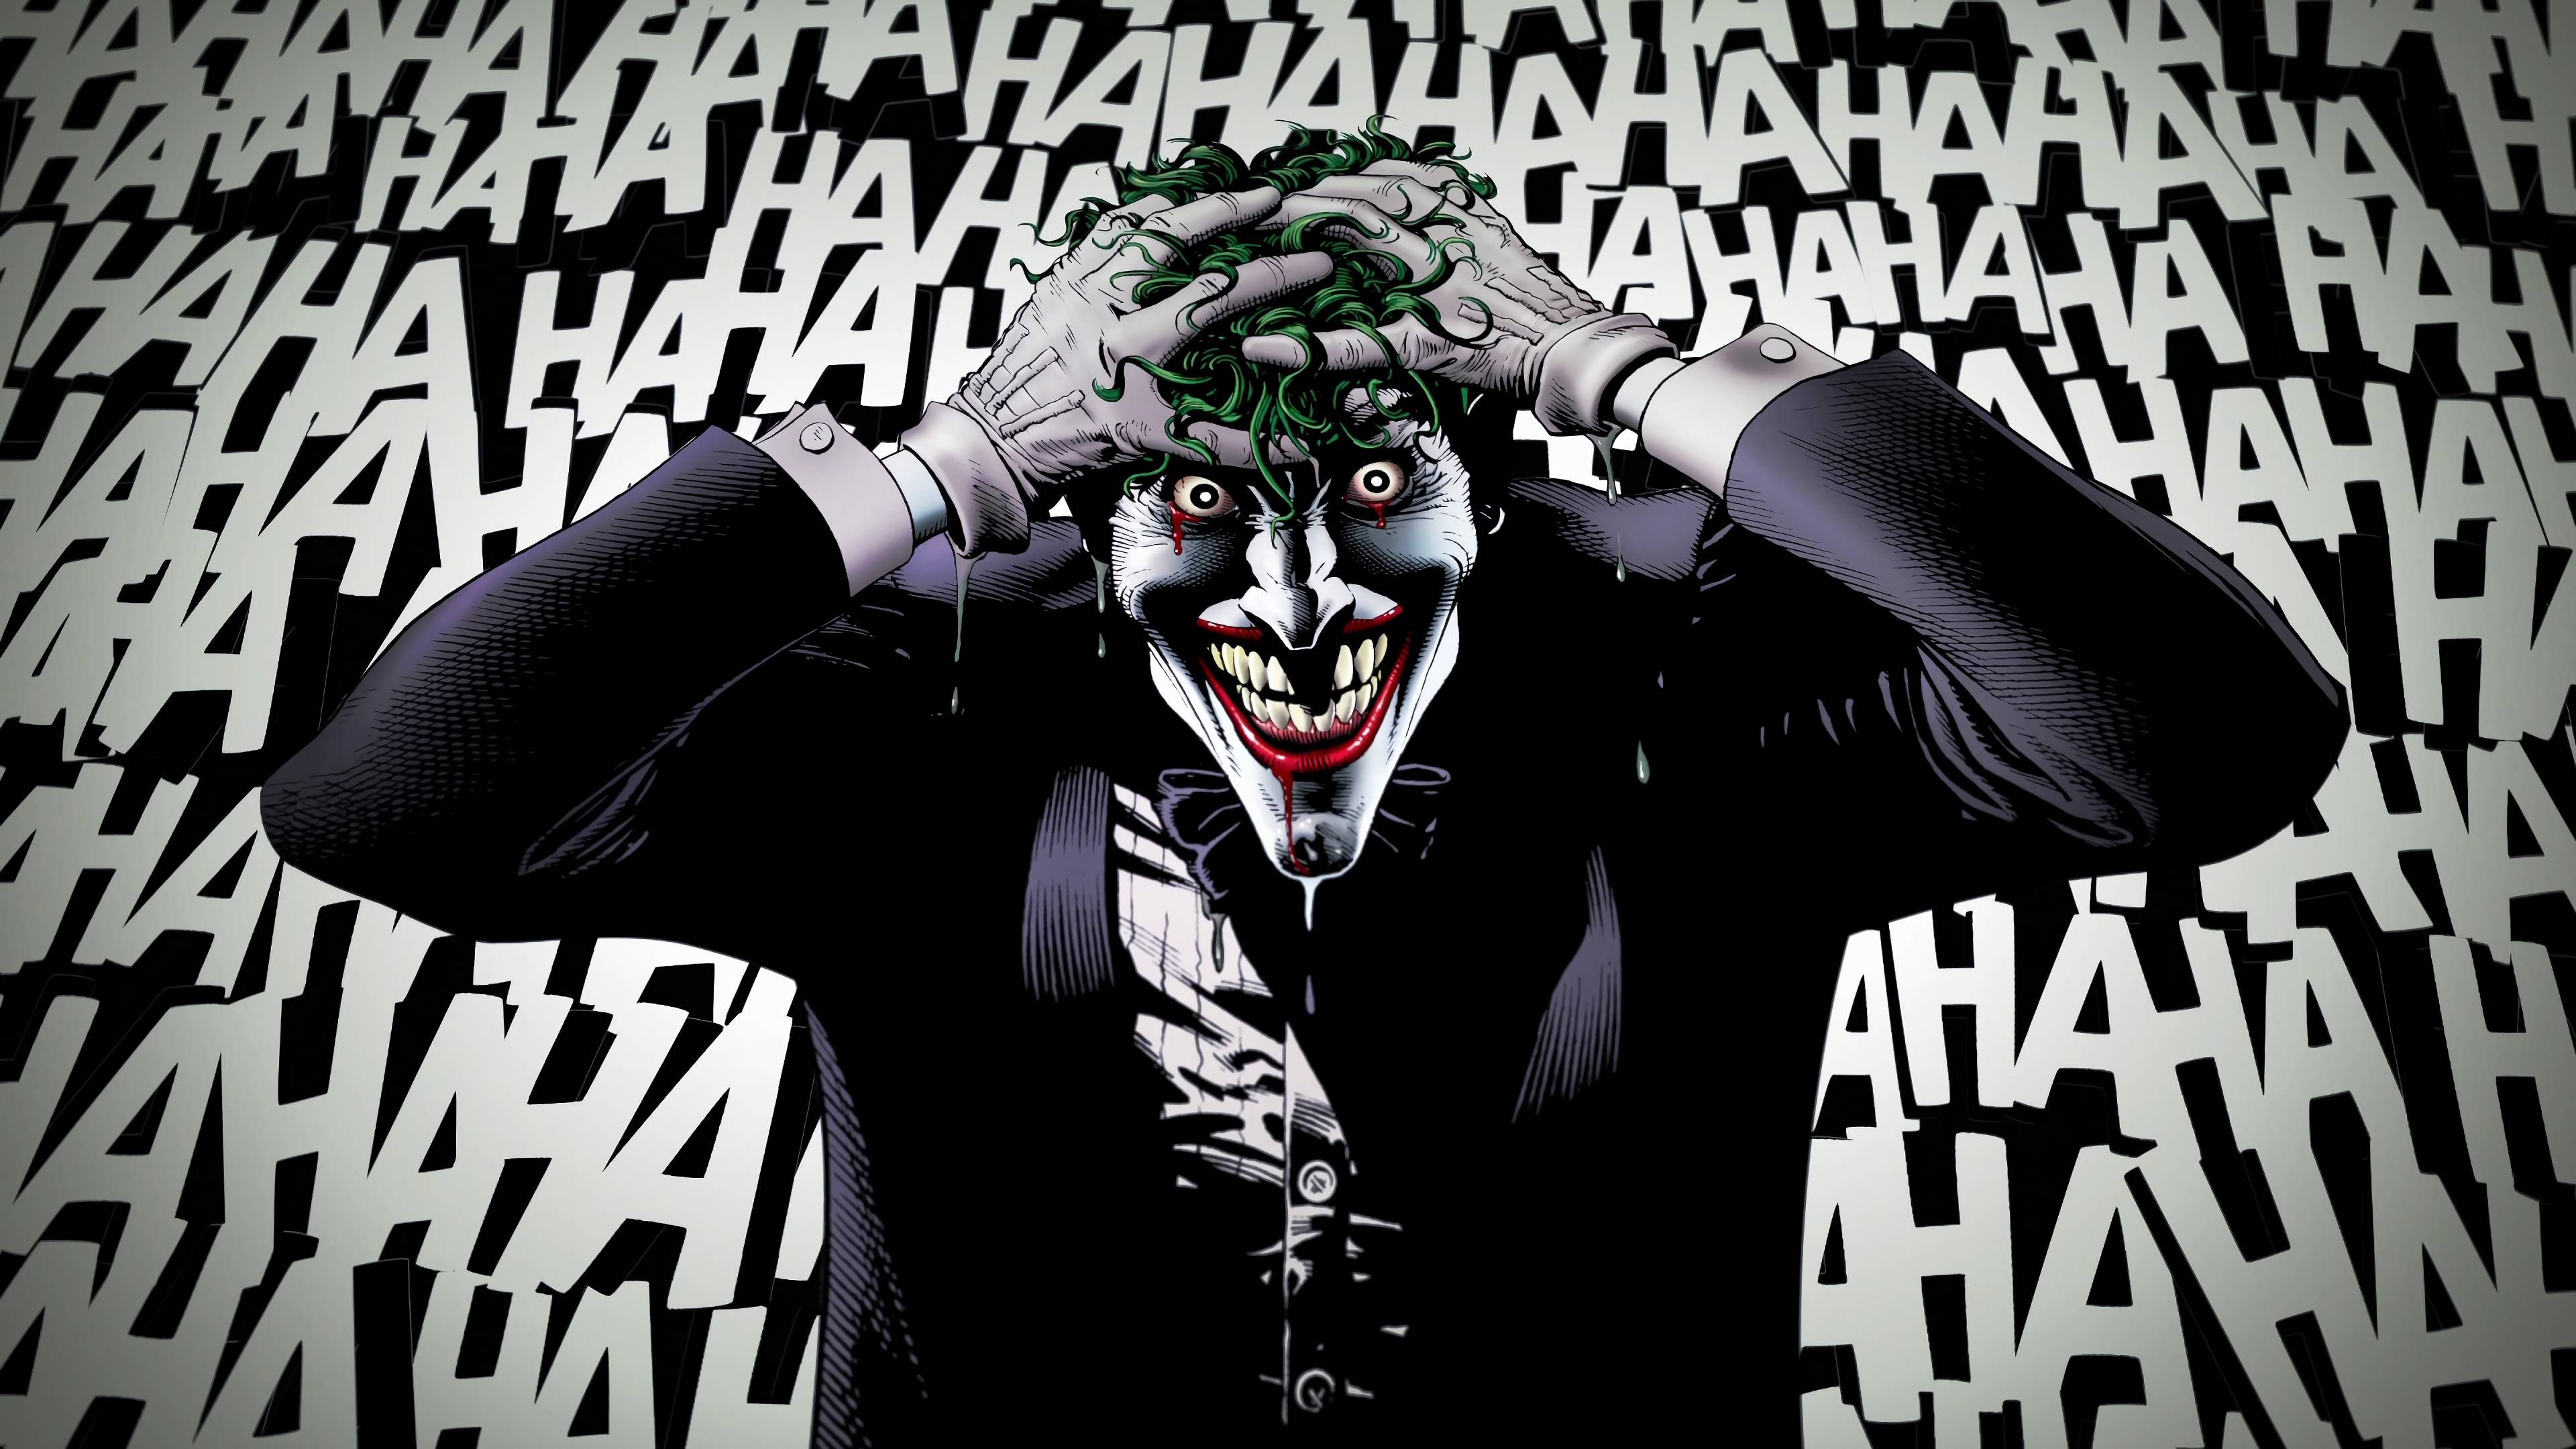 Joker Laughing Wallpaper Free Joker Laughing Background